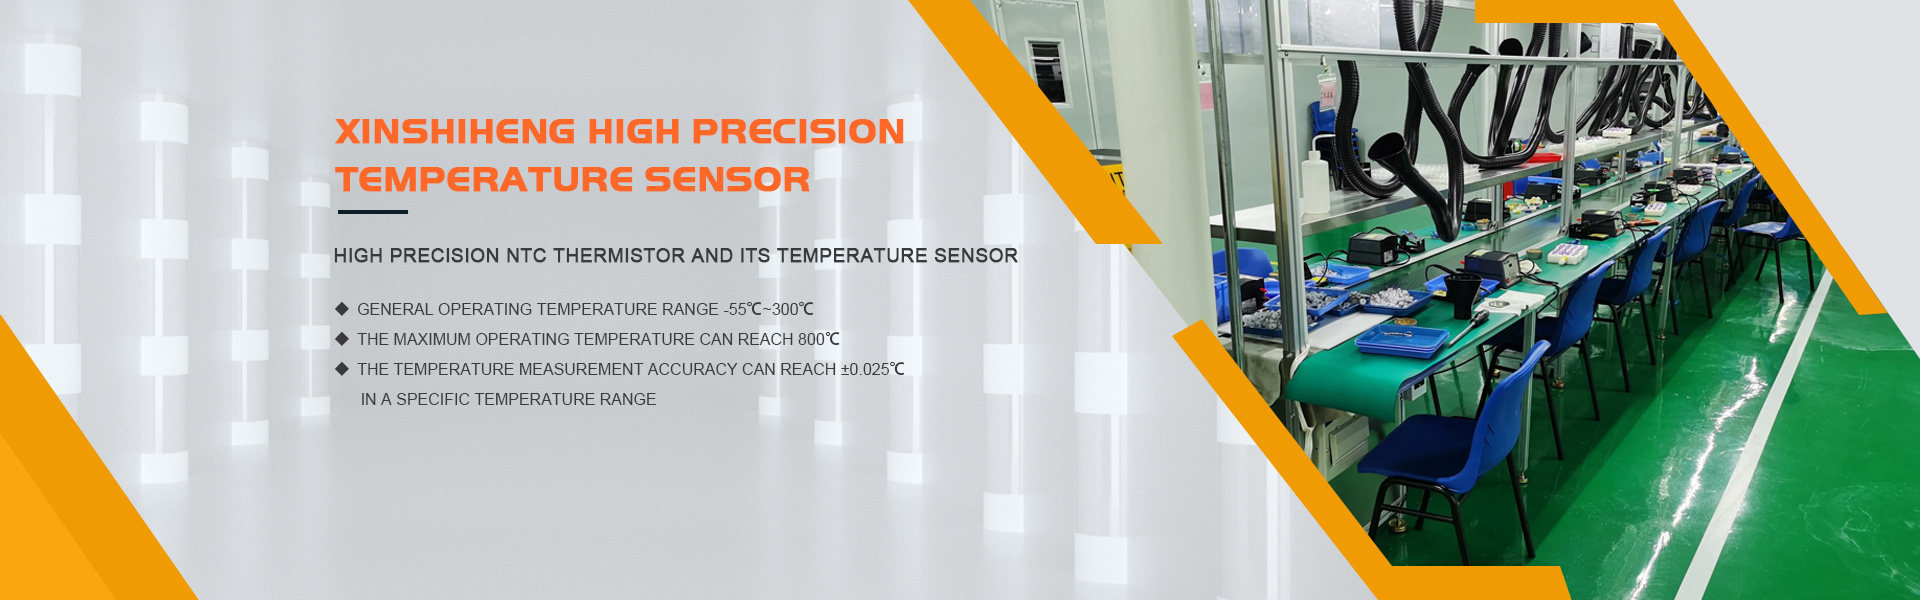 Producător de termistor NTC, senzor de temperatură, precizie ridicată,GUANGDONG XINSHIHENG TECHNOLOGY CO.,LTD